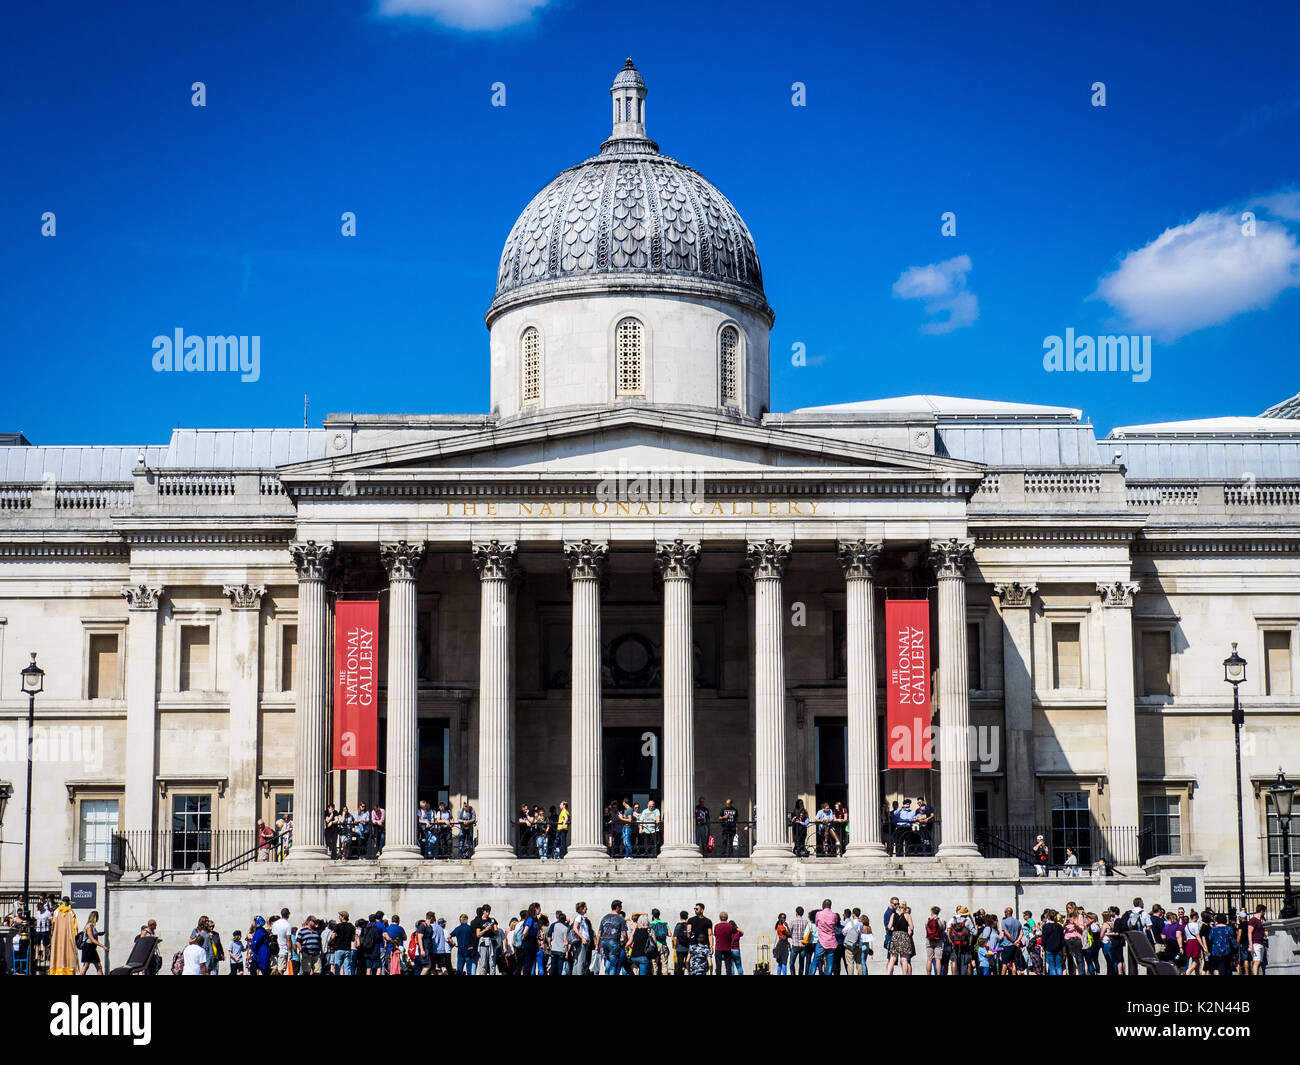 National Gallery di Londra - la folla fuori l'ingresso principale per la National Gallery in Trafalgar Square, Central London, Regno Unito Foto Stock